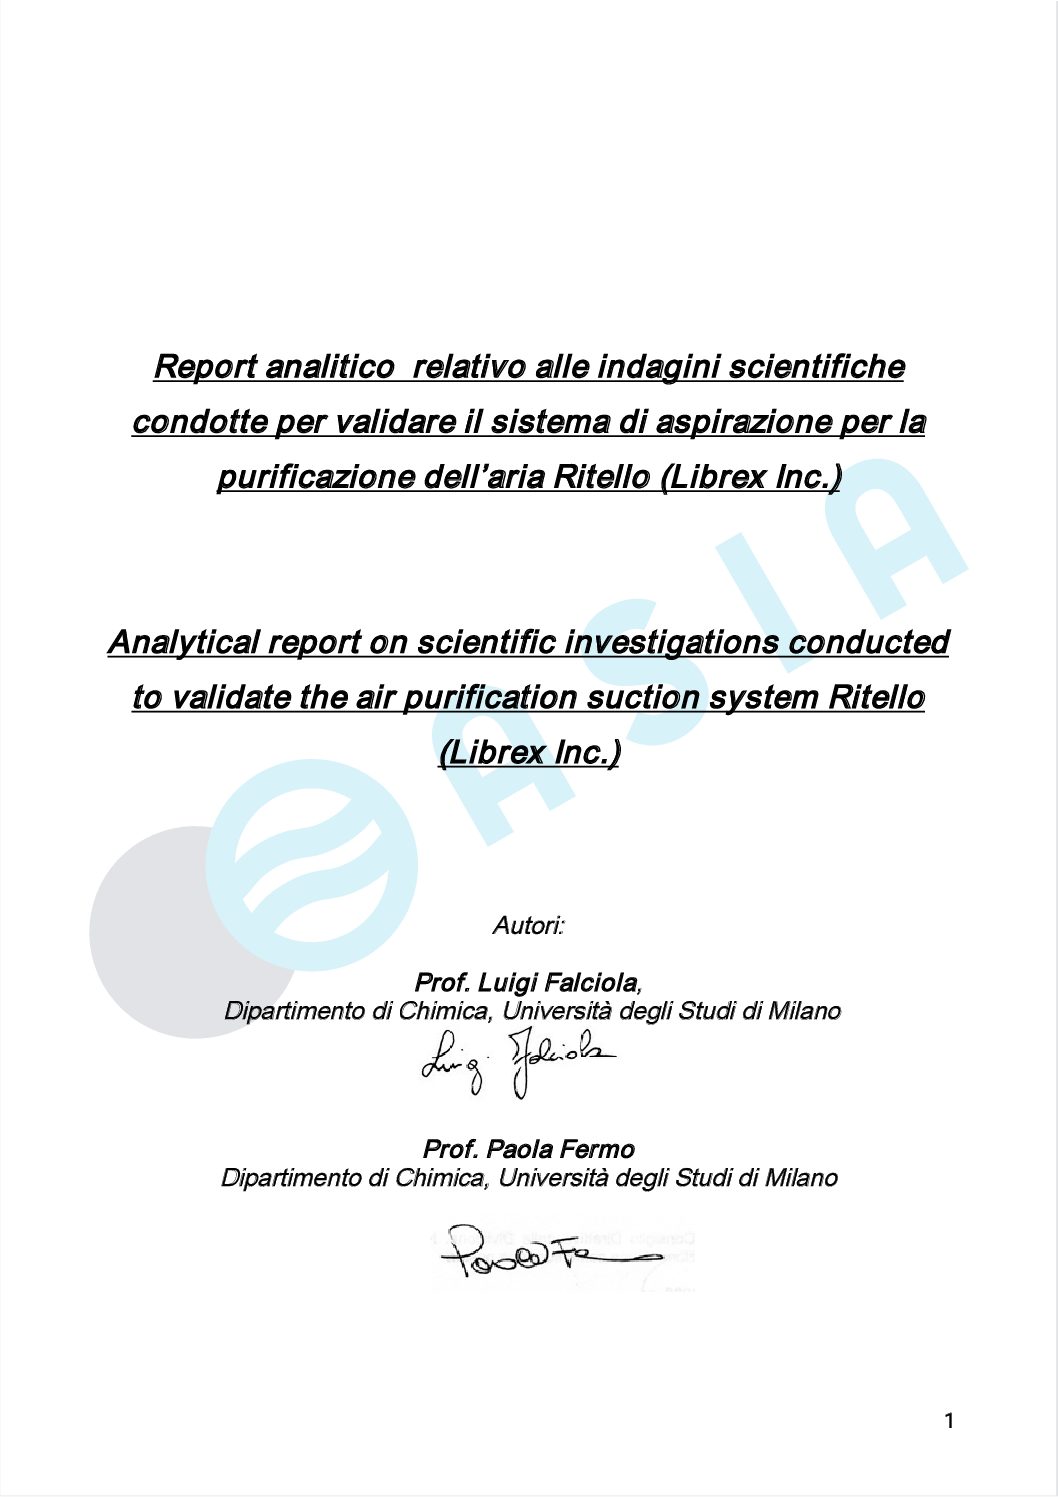 Report analitico relativo alle indagini scientifiche condotte per validare il sistema di aspirazione per la purificazione dell'aria Ritello